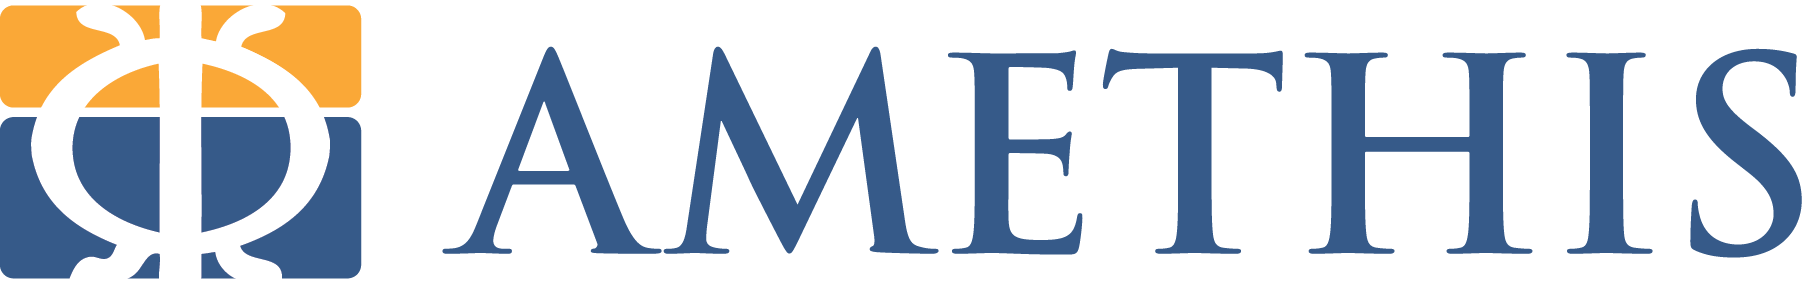 michellin company logo